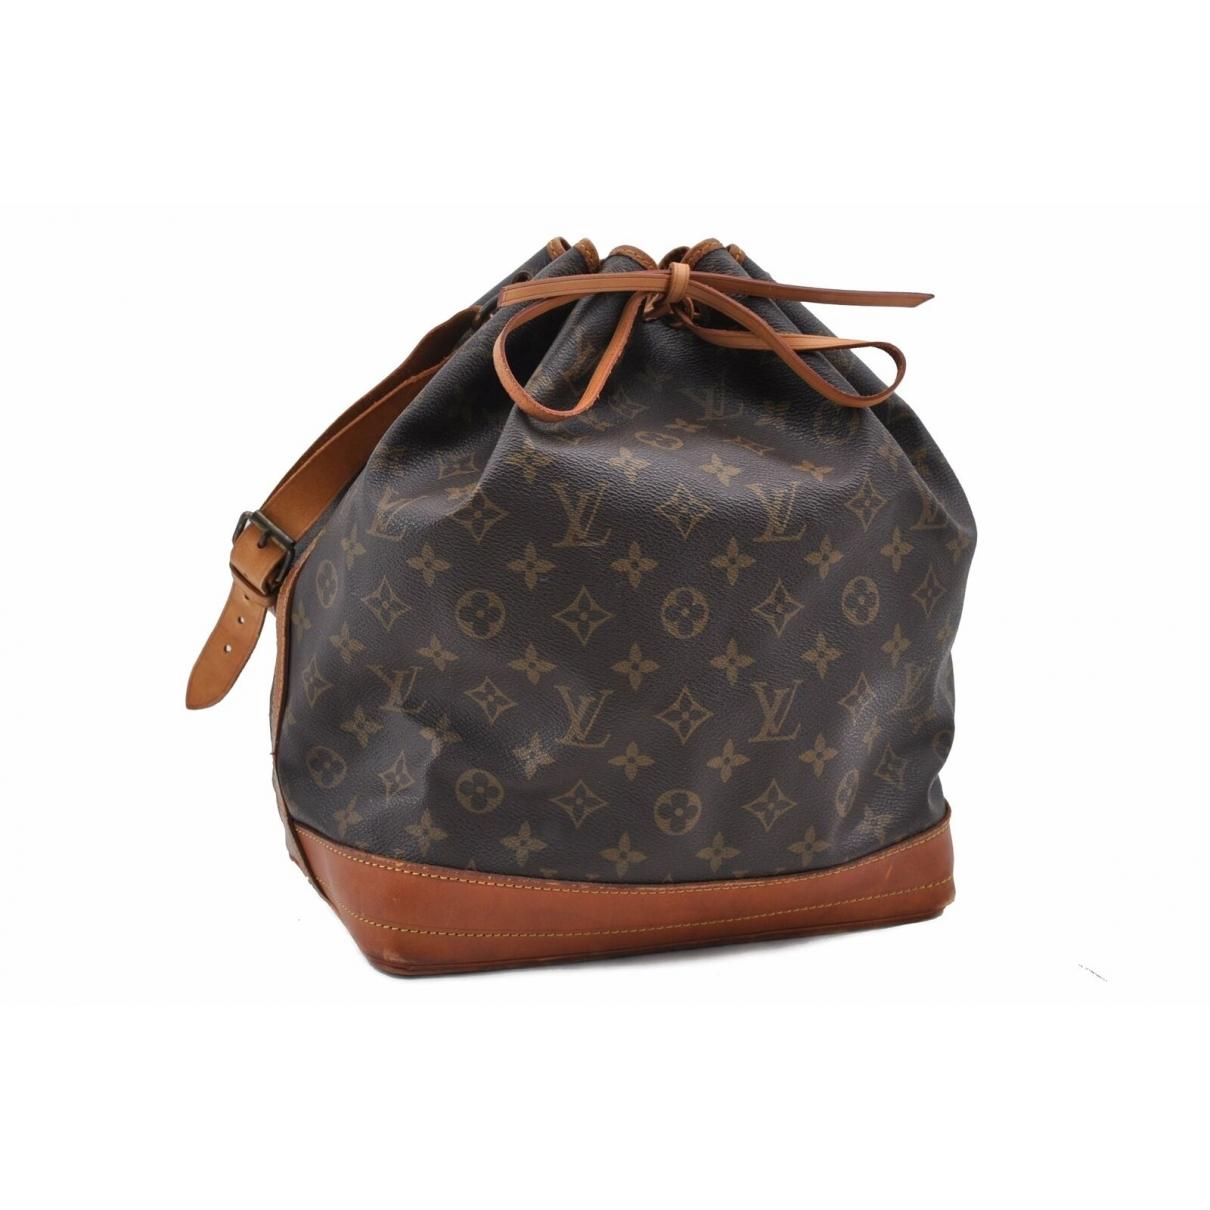 Lyst - Louis Vuitton Vintage Noé Brown Cloth Handbag in Brown - Save 55%